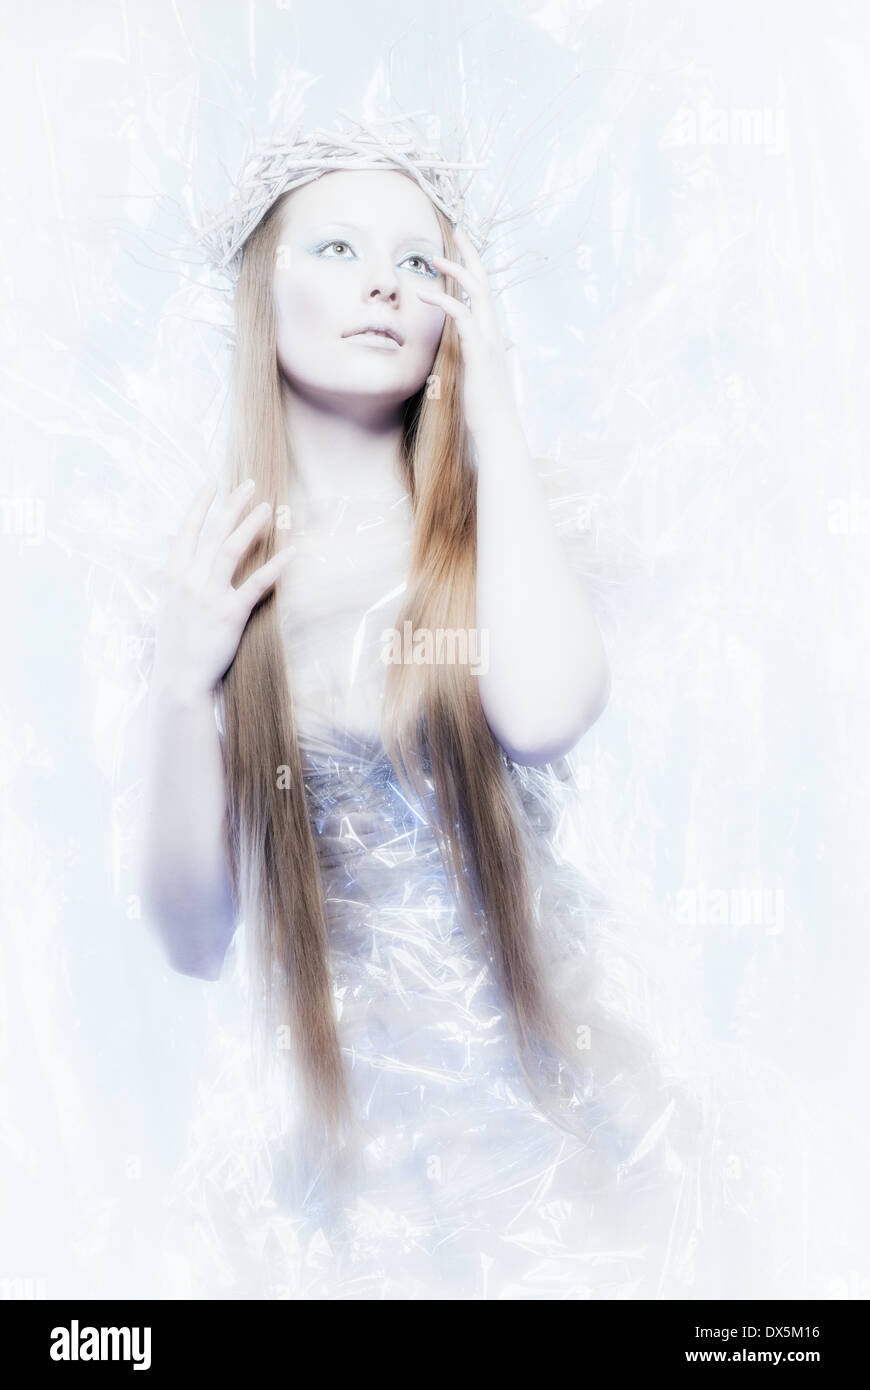 Fantasia di ghiaccio tema queen, giovane donna bella, studio shot Foto Stock